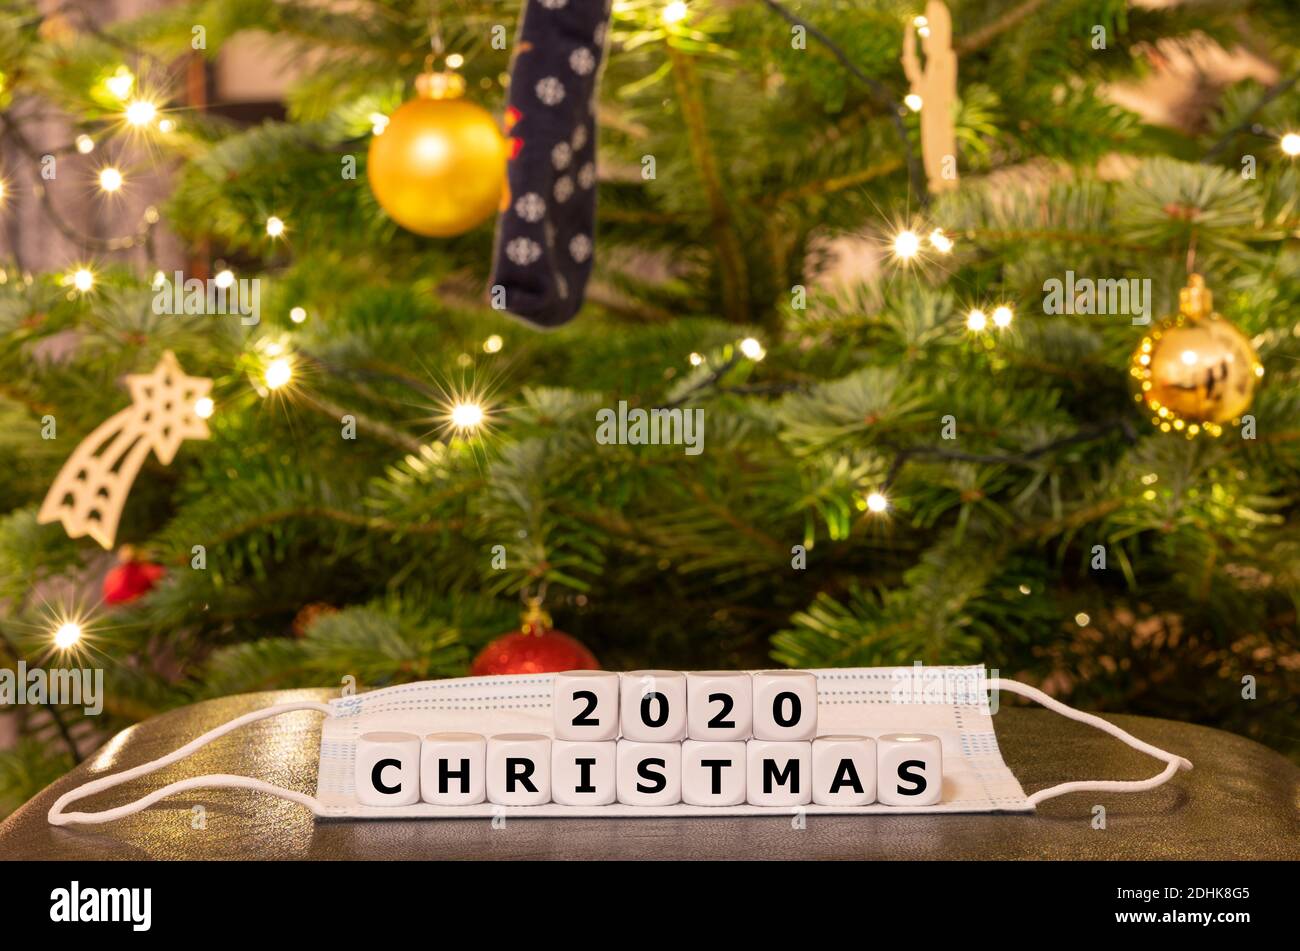 Simbolo del periodo natalizio durante la pandemia della corona. I dadi formano l'espressione 'Natale 2020' sulla parte superiore di una maschera di fronte ad un albero di Natale Foto Stock